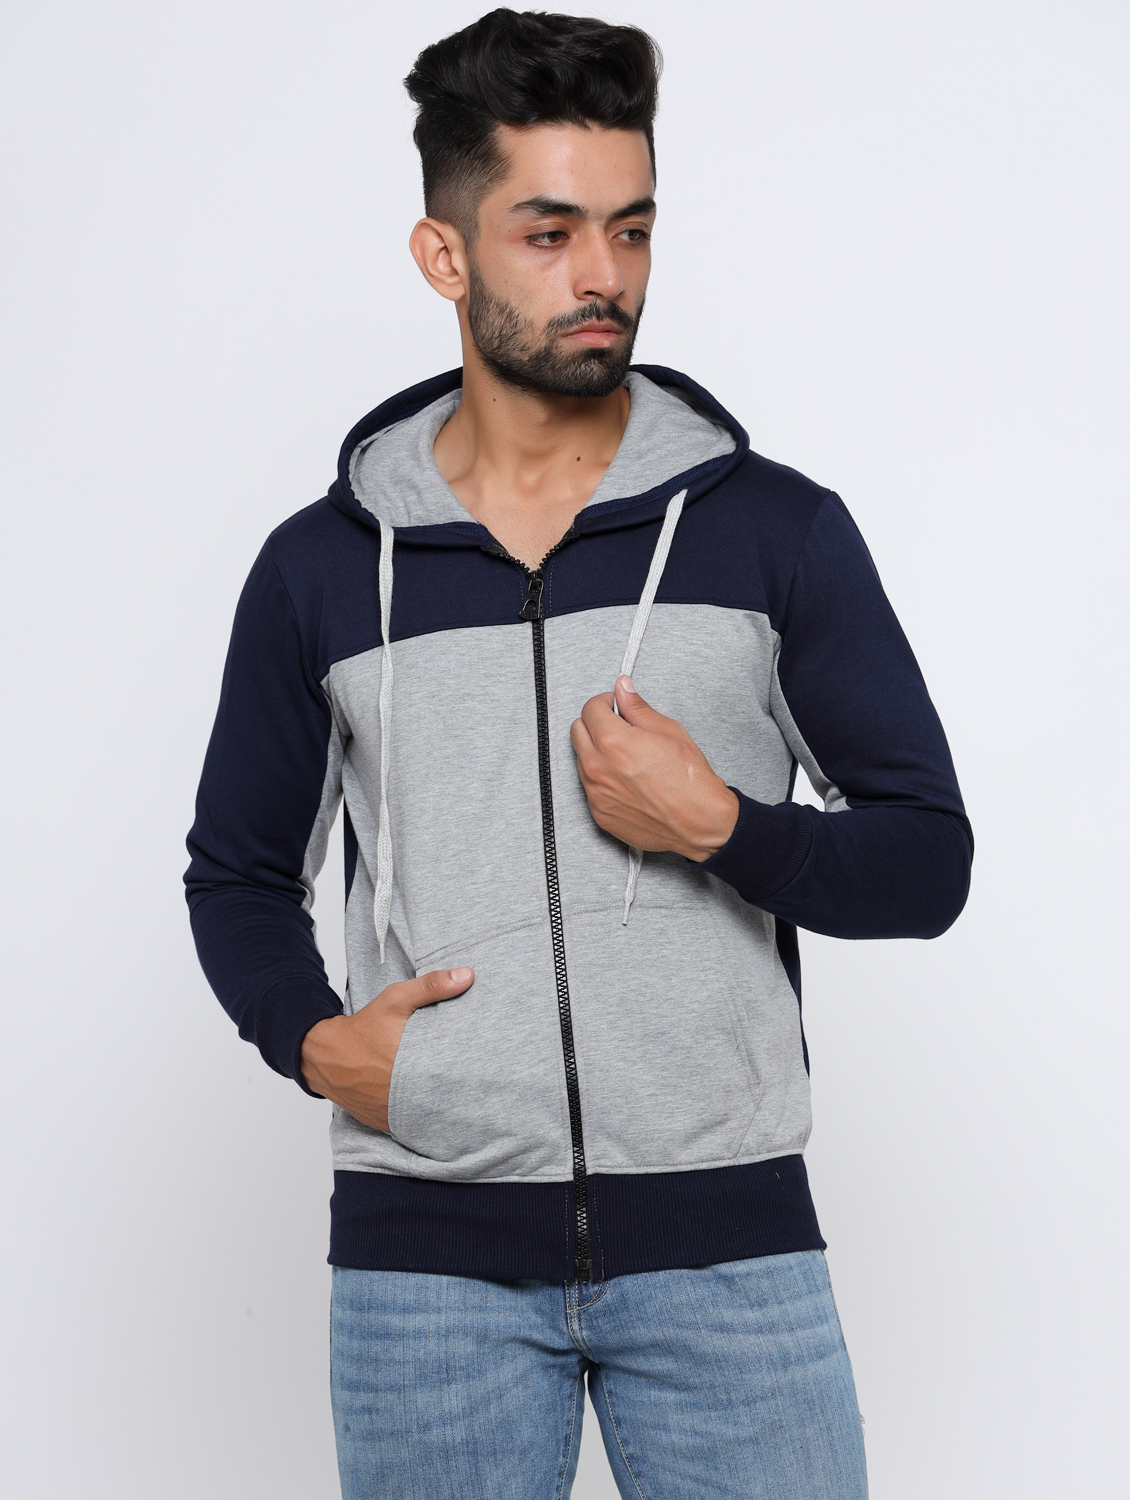 Buy Madtee Multicolor Full Sleeves Sweatshirt With Zipper Online @ ₹699 ...